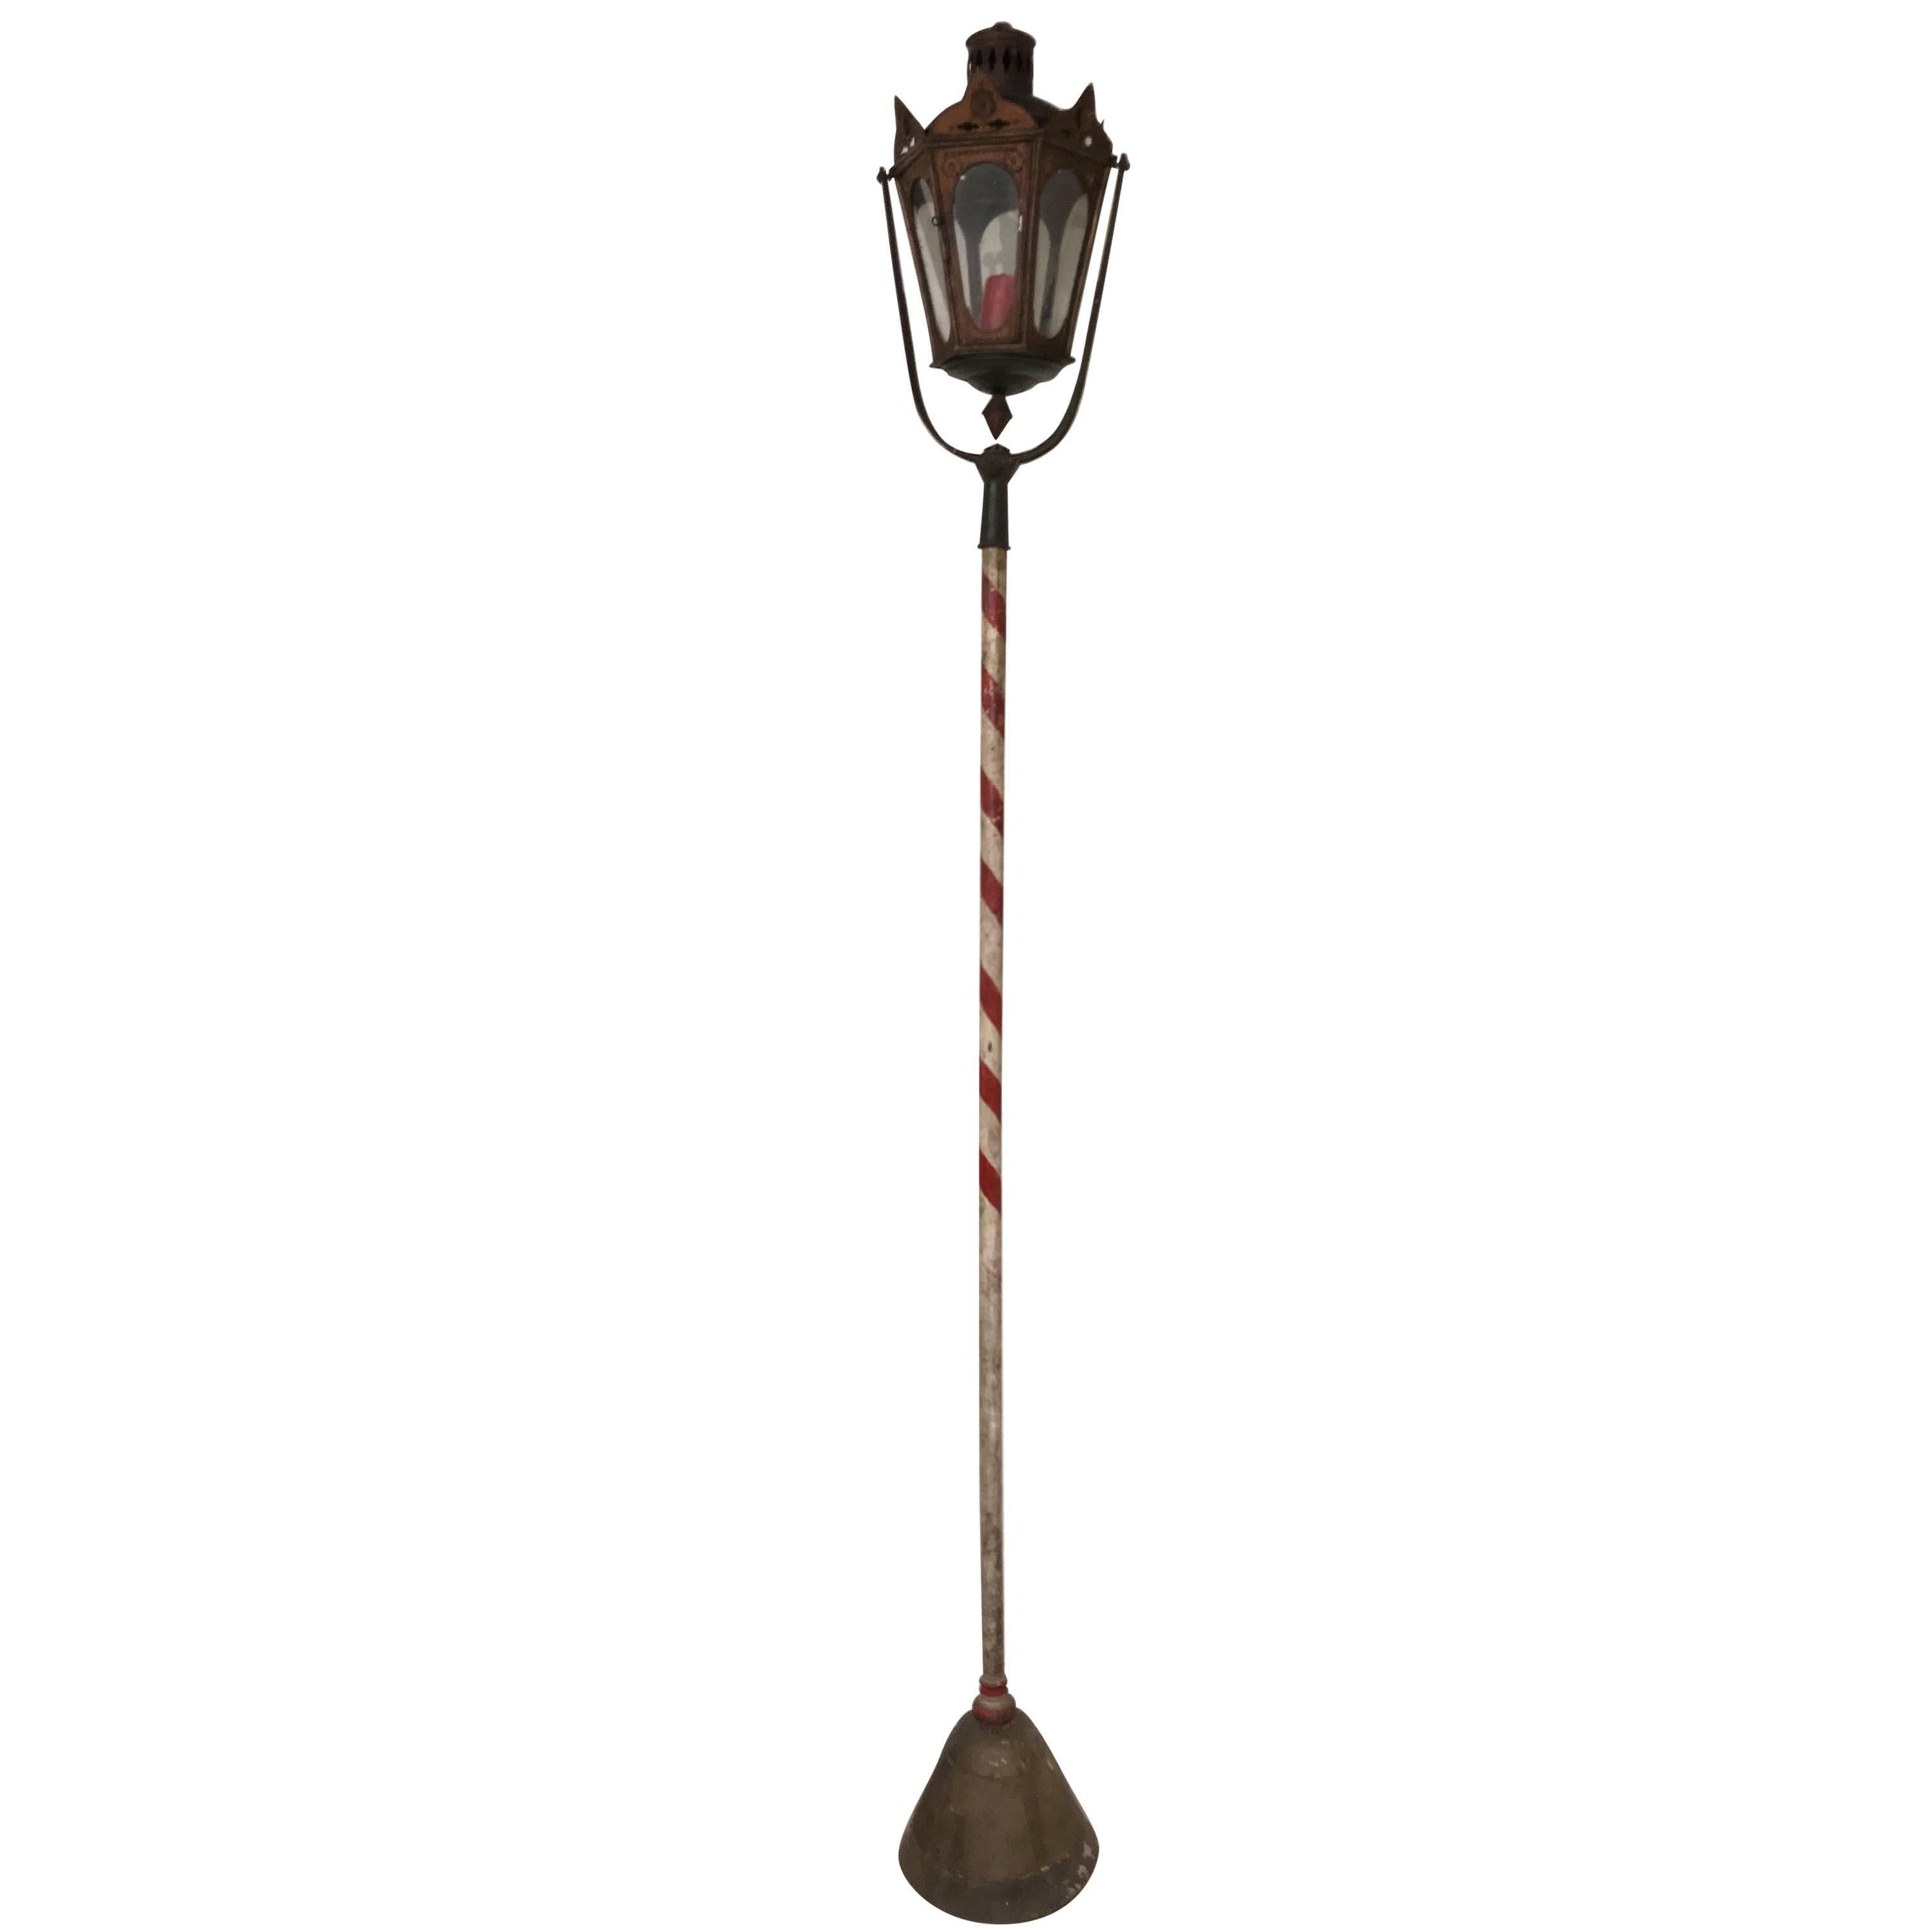 Italienische oder venezianische Gondola-Lampe aus dem 19. Jahrhundert in alter Farbe